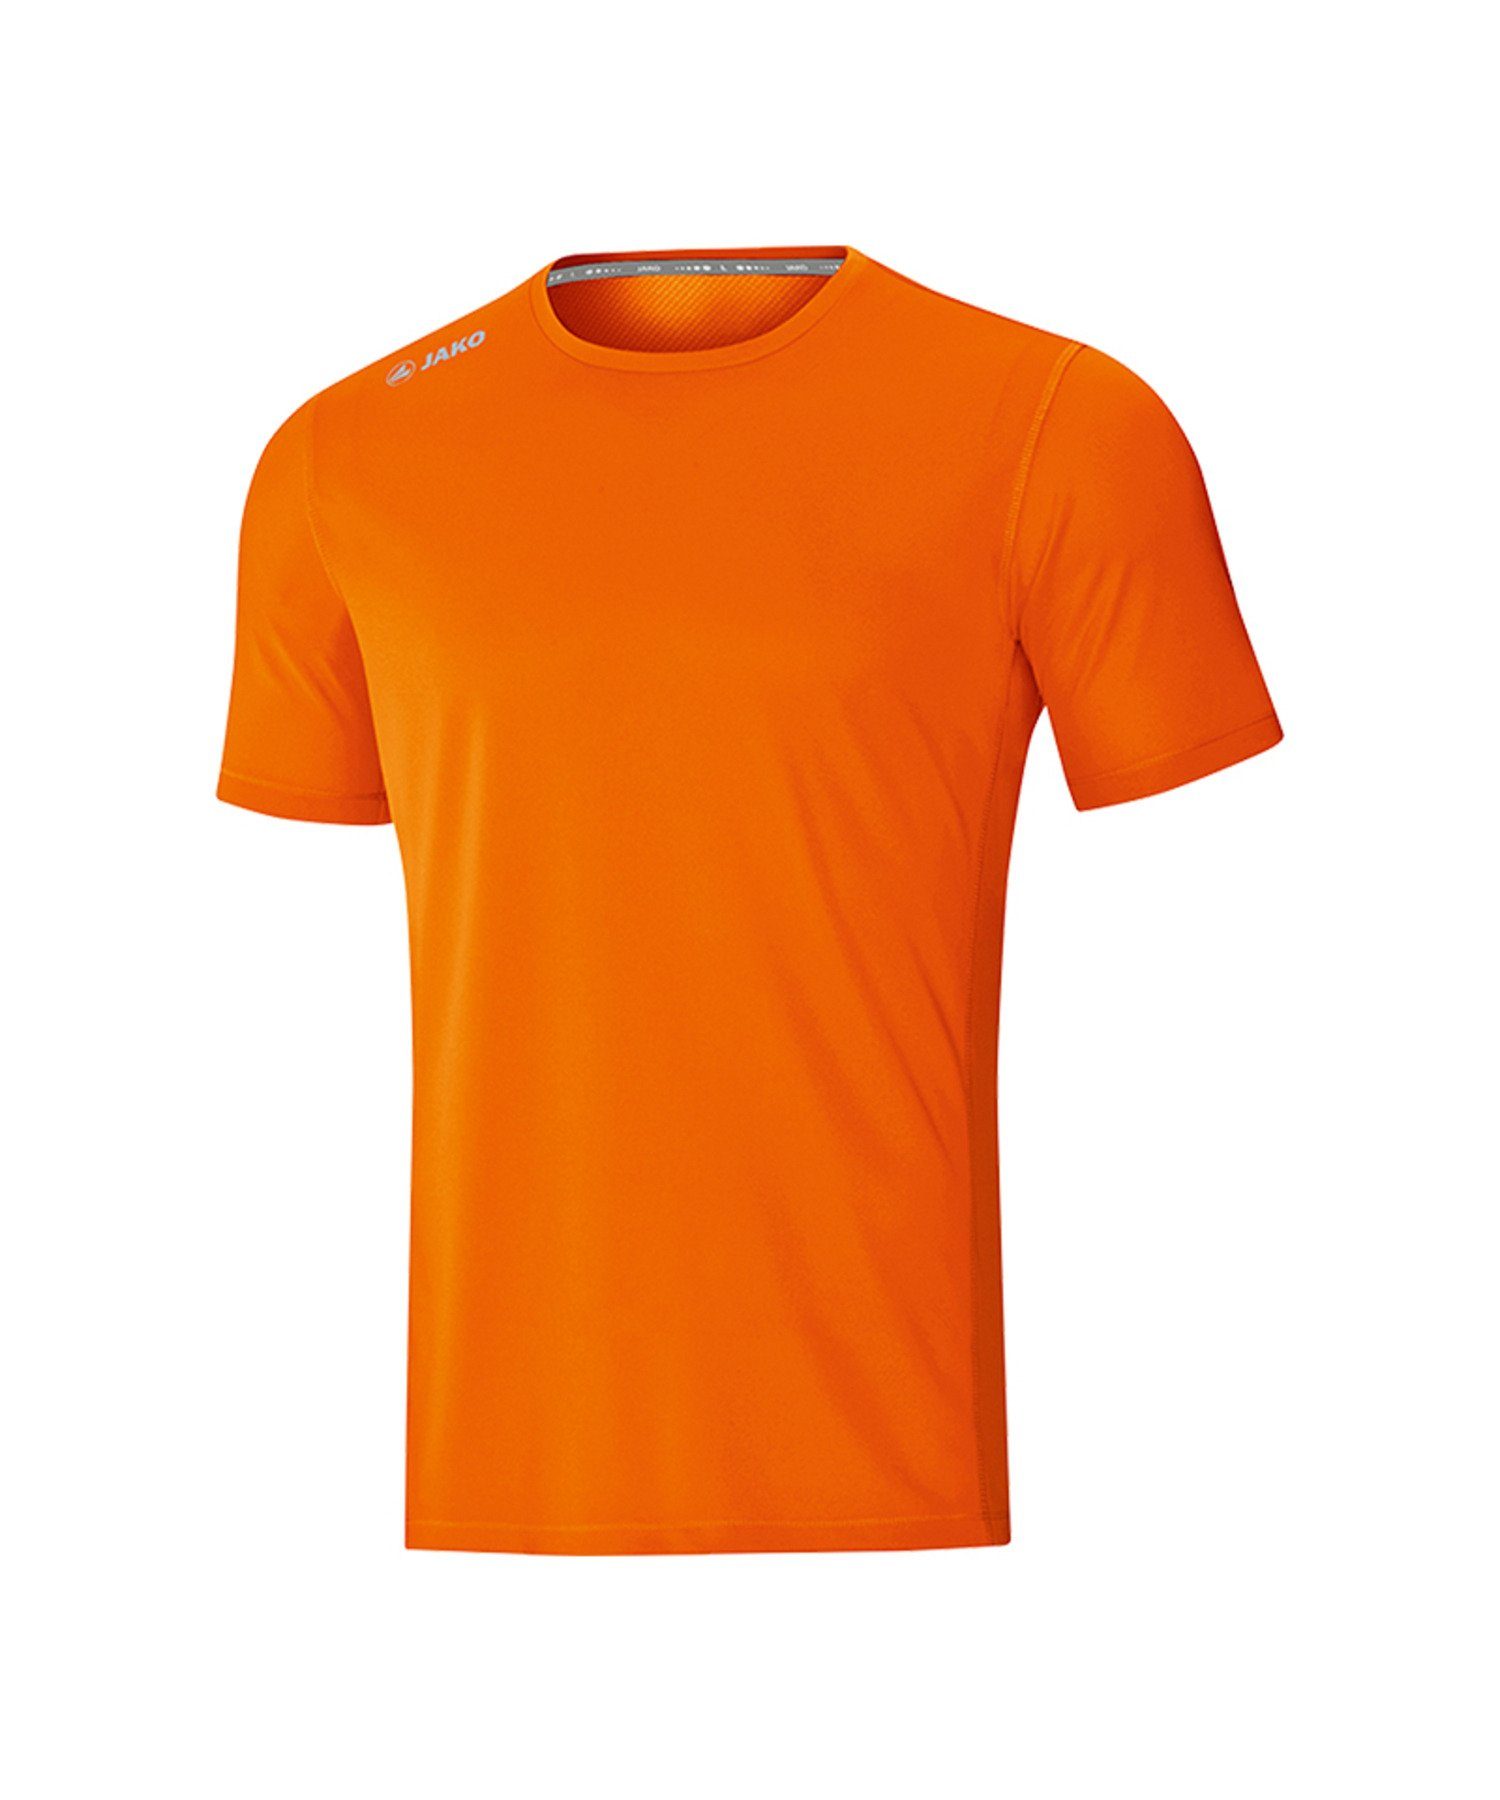 Kids T-Shirt Orange default Run 2.0 Running Jako Laufshirt